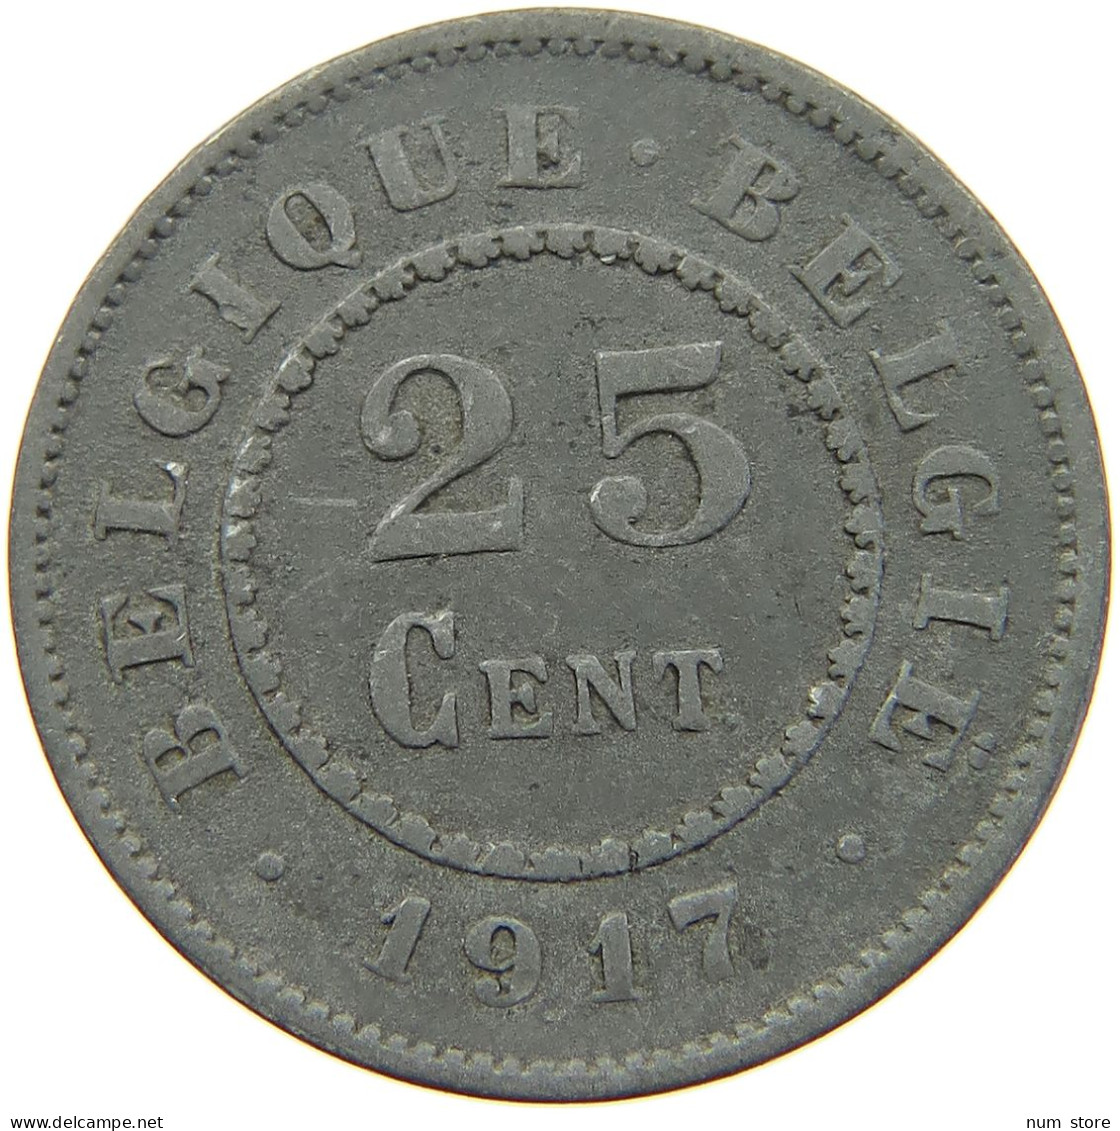 BELGIUM 25 CENTIMES 1917 #c067 0045 - 25 Centimes